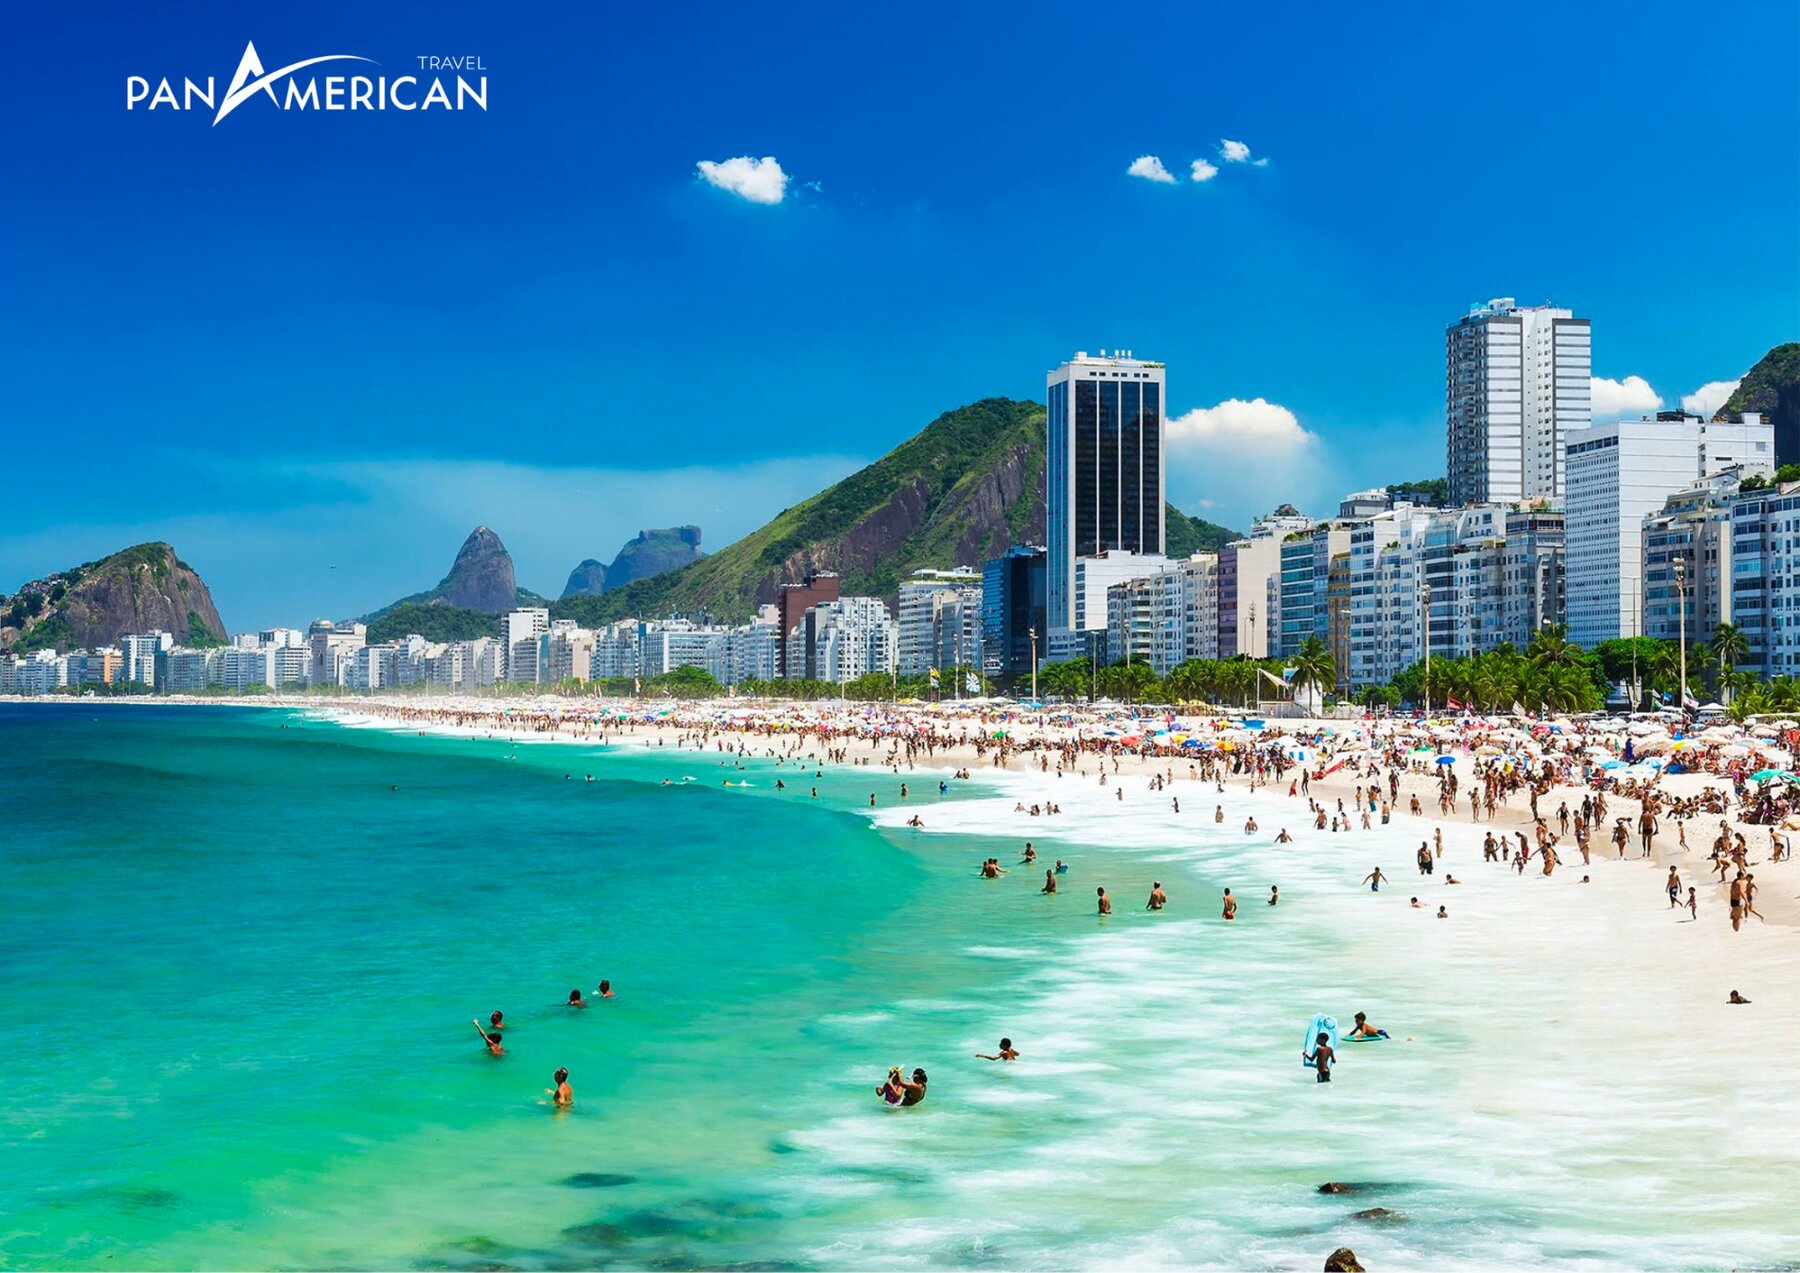 Bãi biển Copacabana là một trong những bãi biển nổi tiếng nhất thế giới